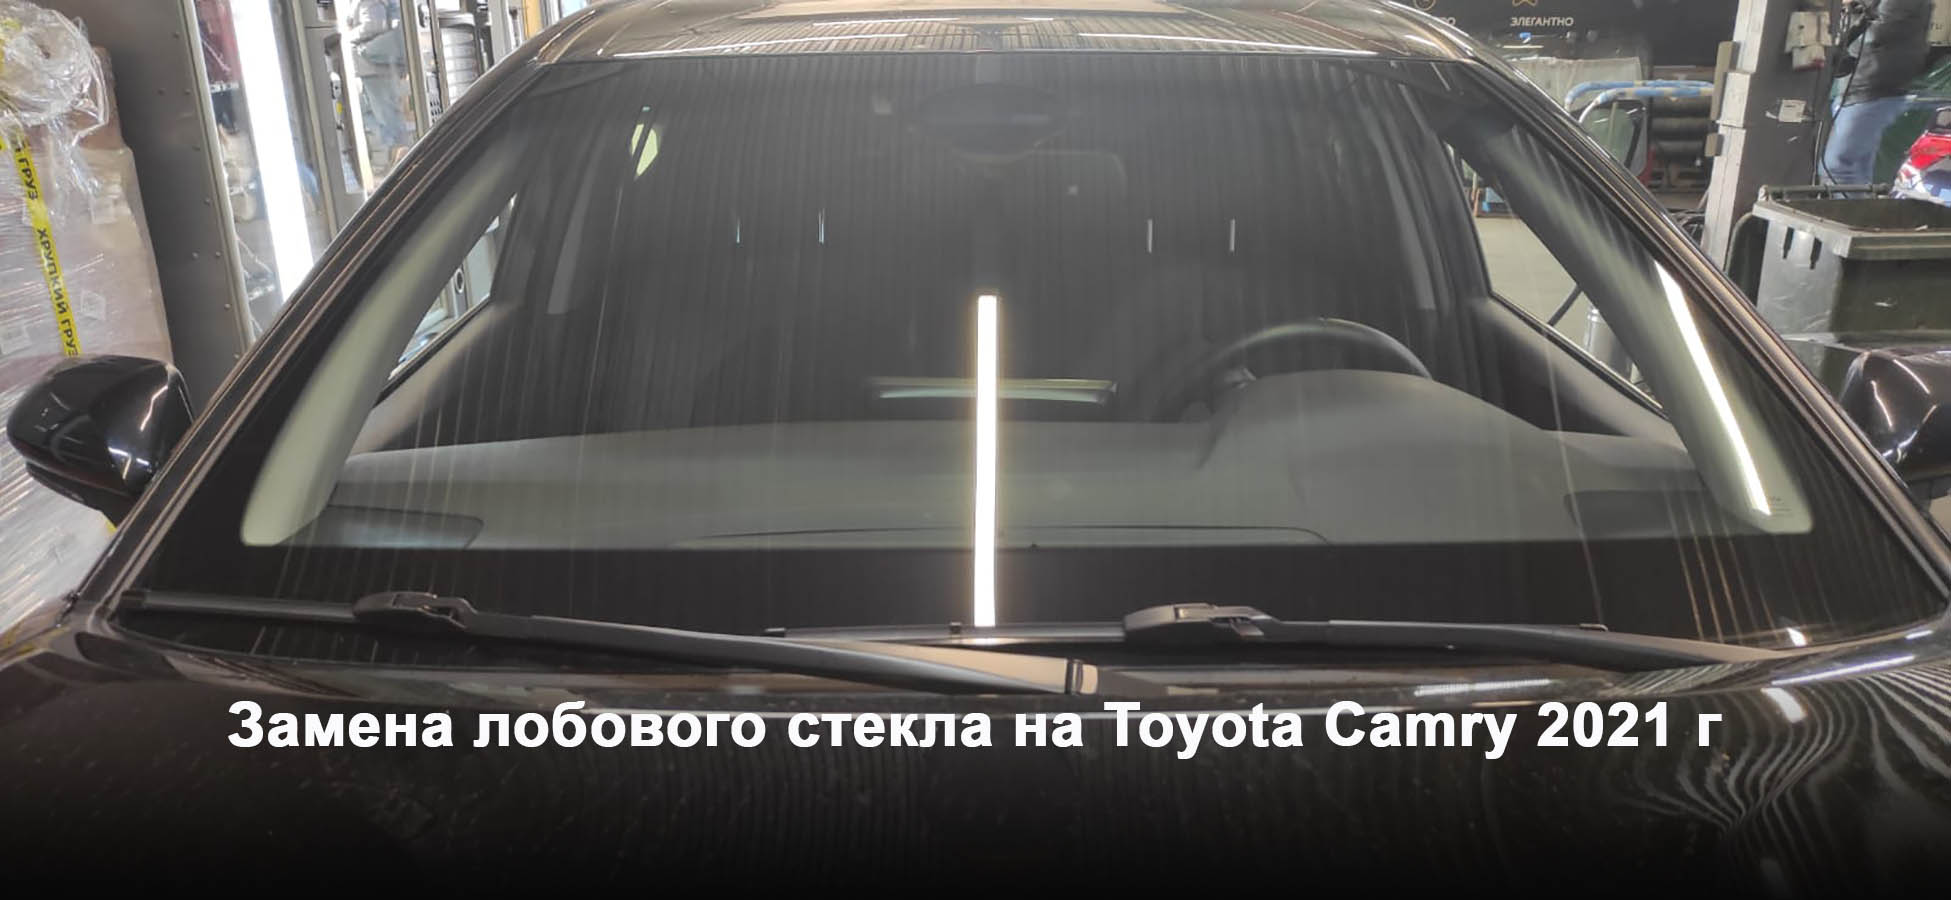 Замена лобового стекла на Toyota Camry 2021 г